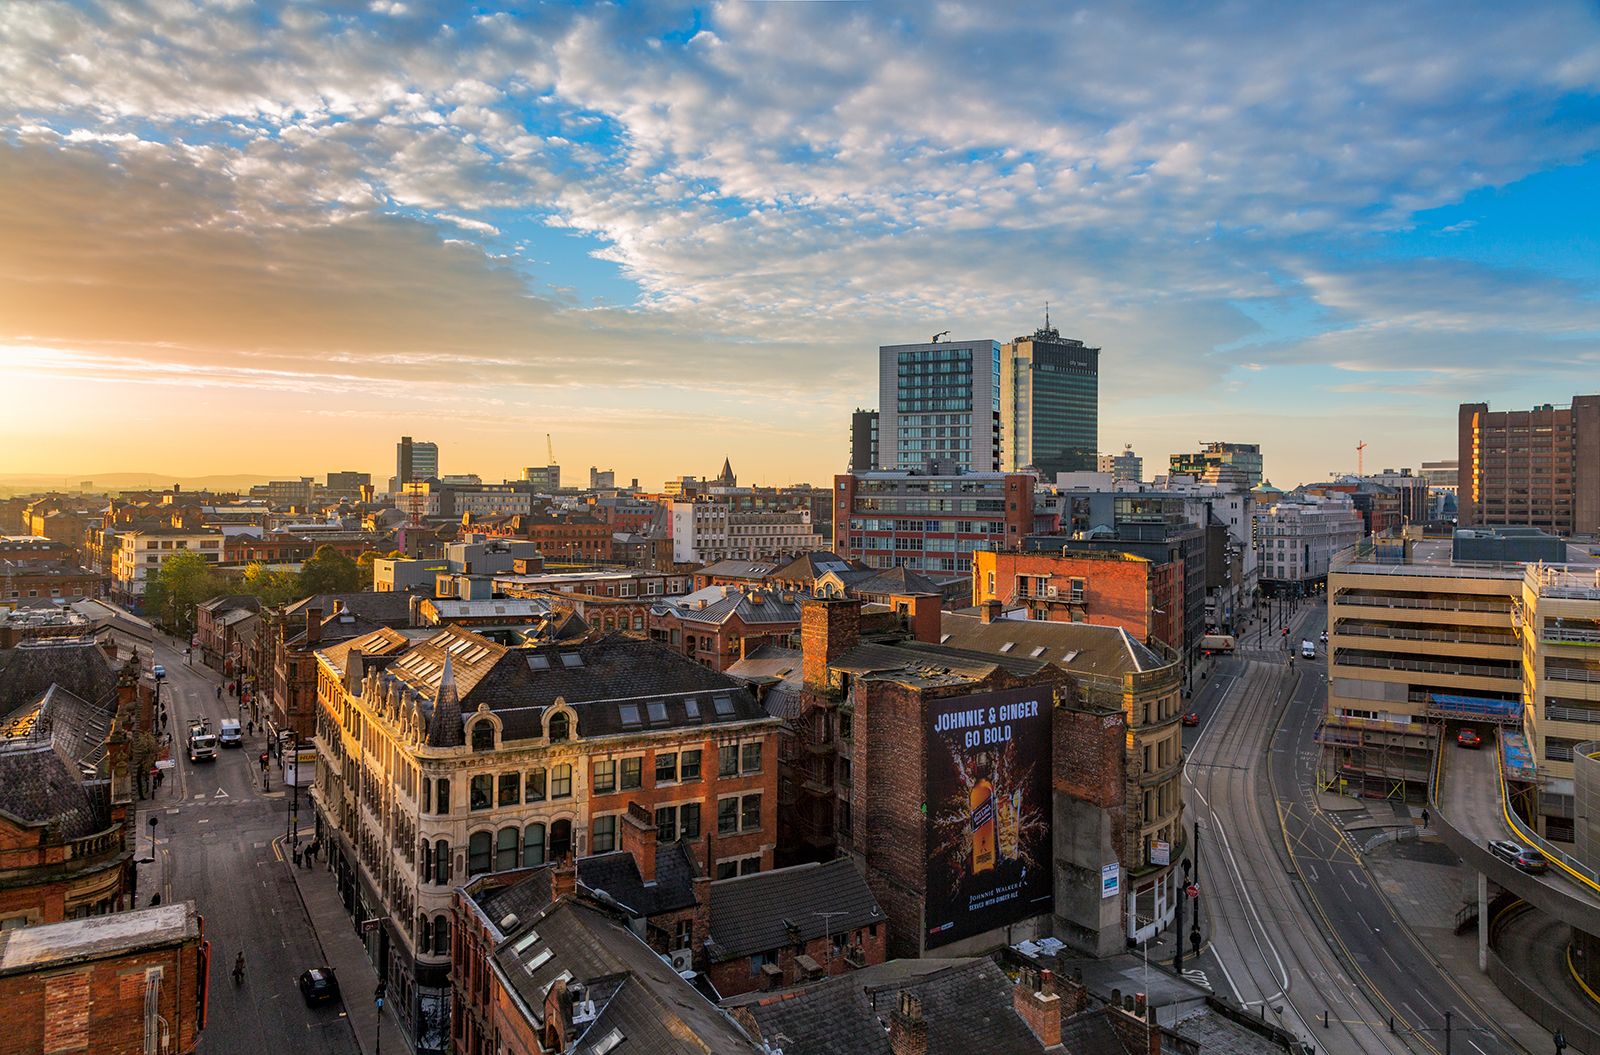 wandelvriendelijkheid van Manchester - luchtfoto van de stad